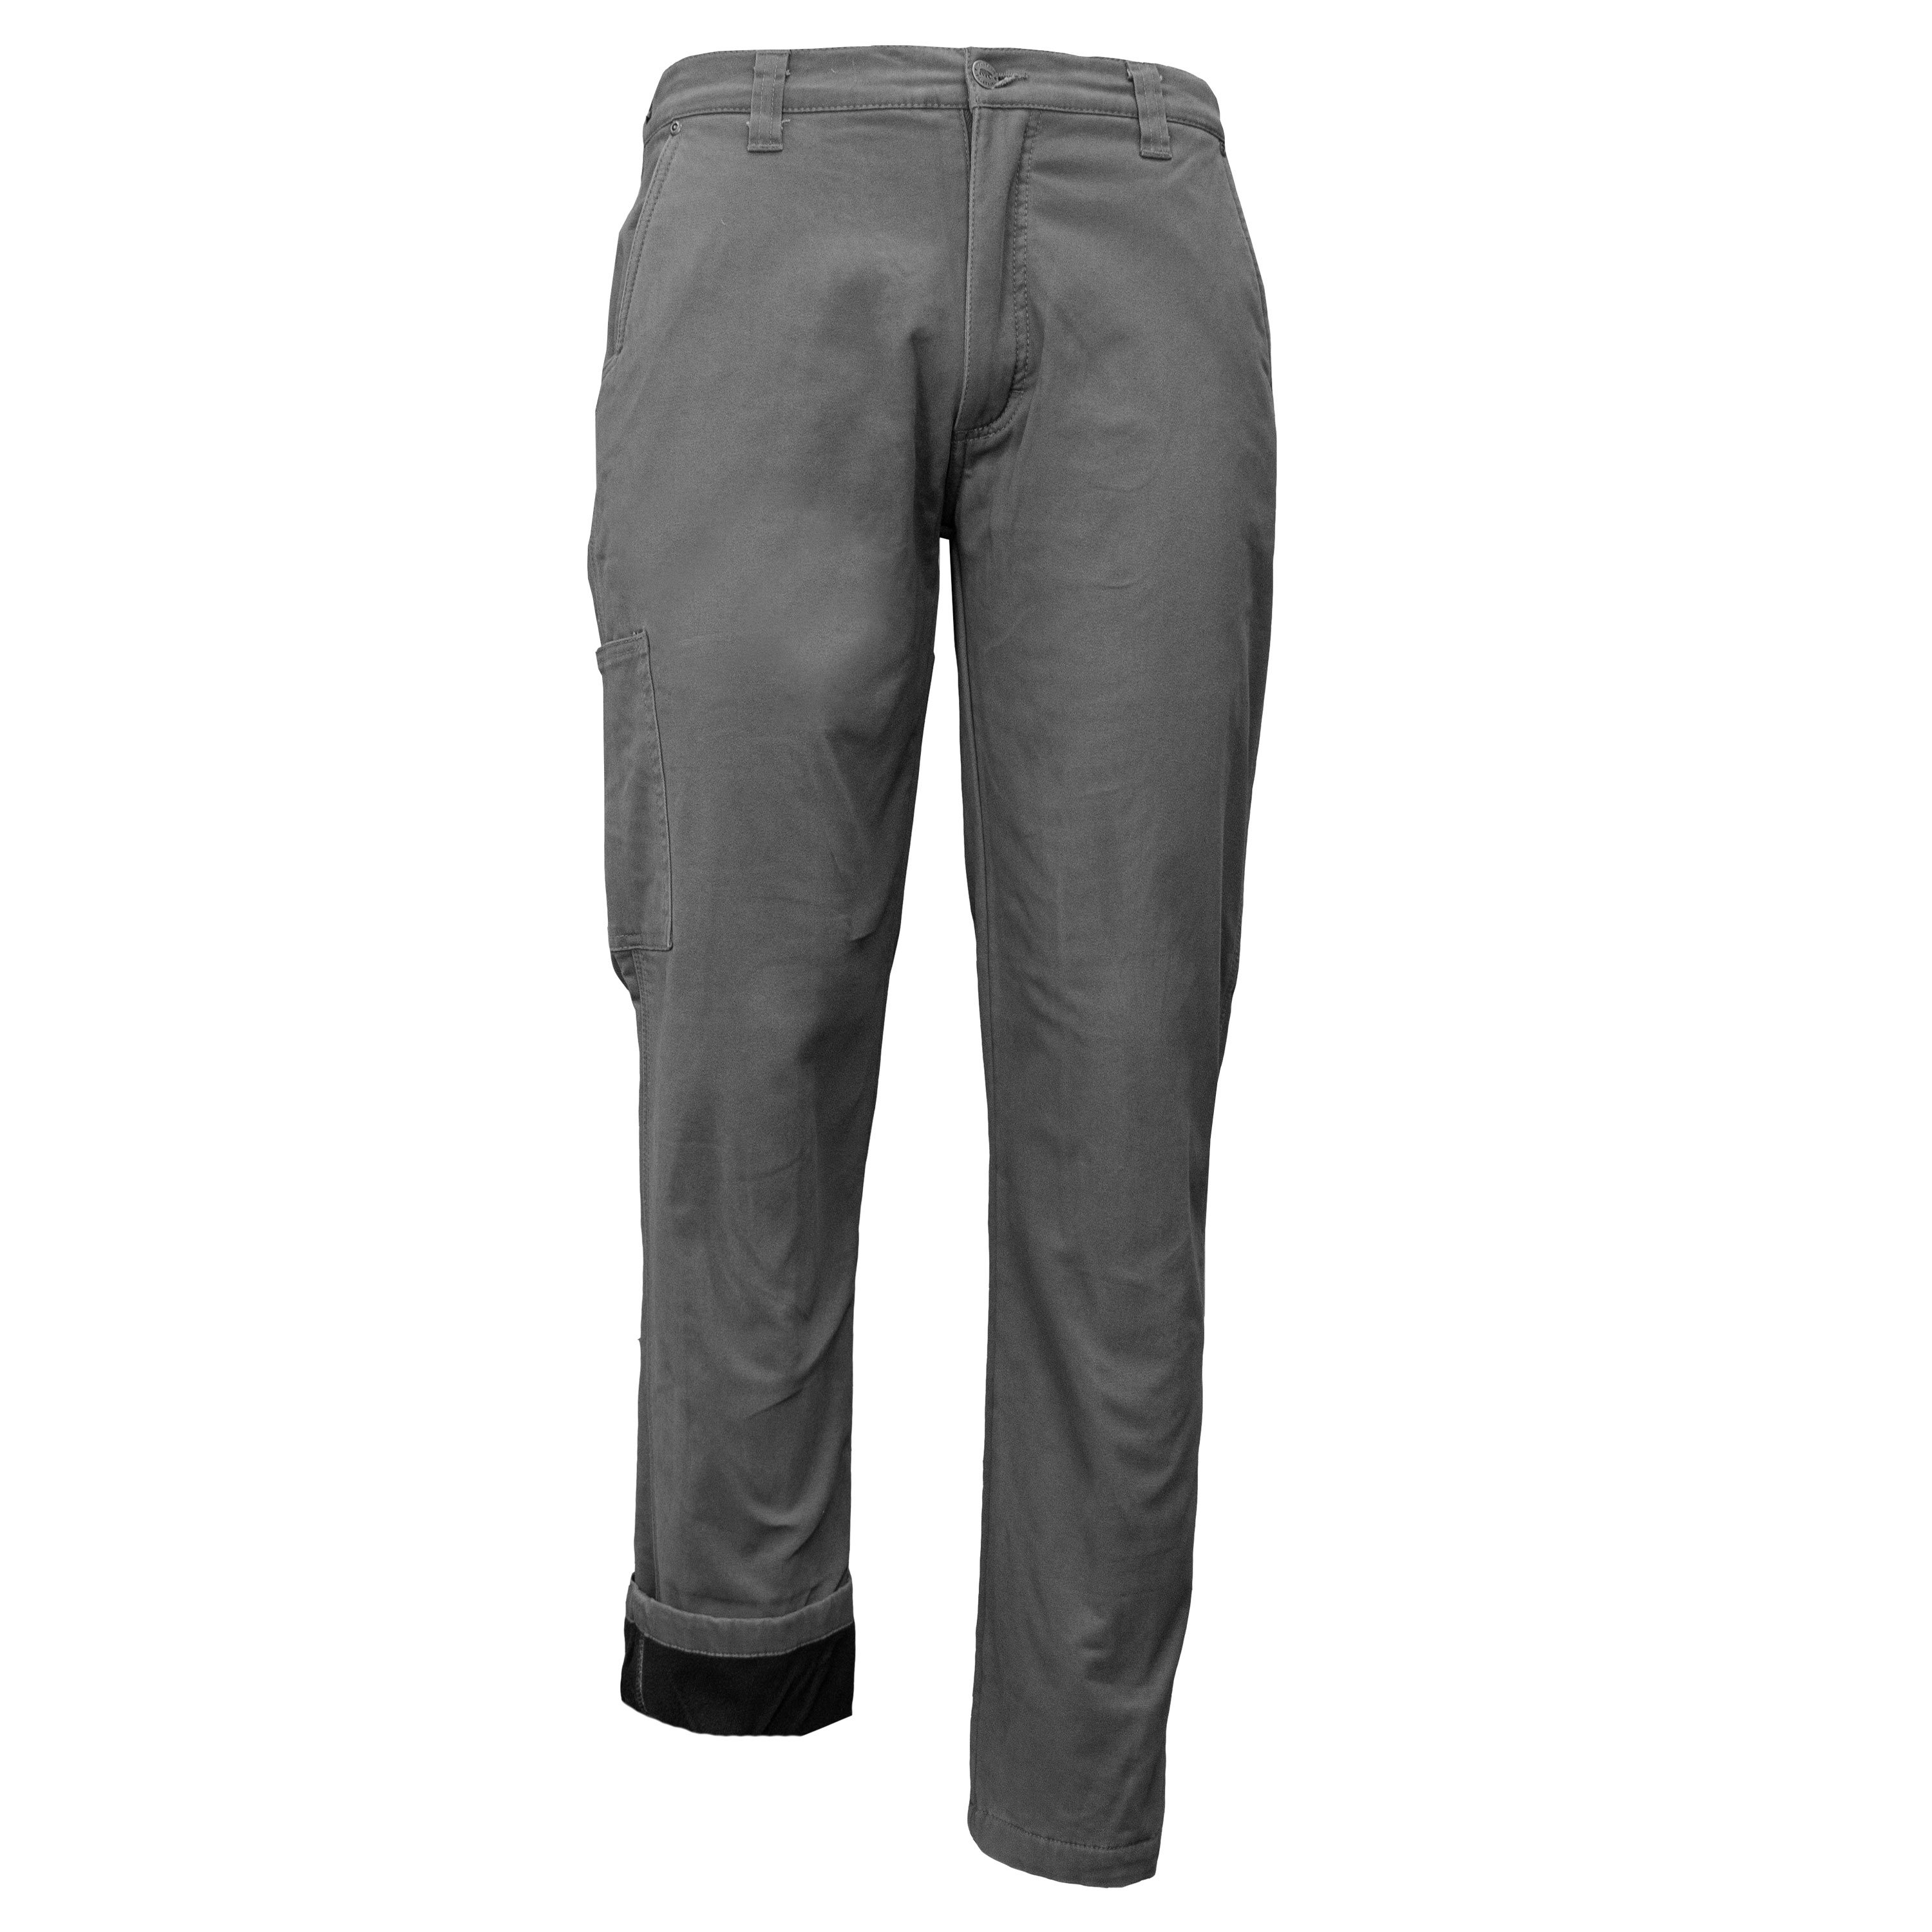 Key Men's Fleece Lined Shield Flex Pants - 32x34